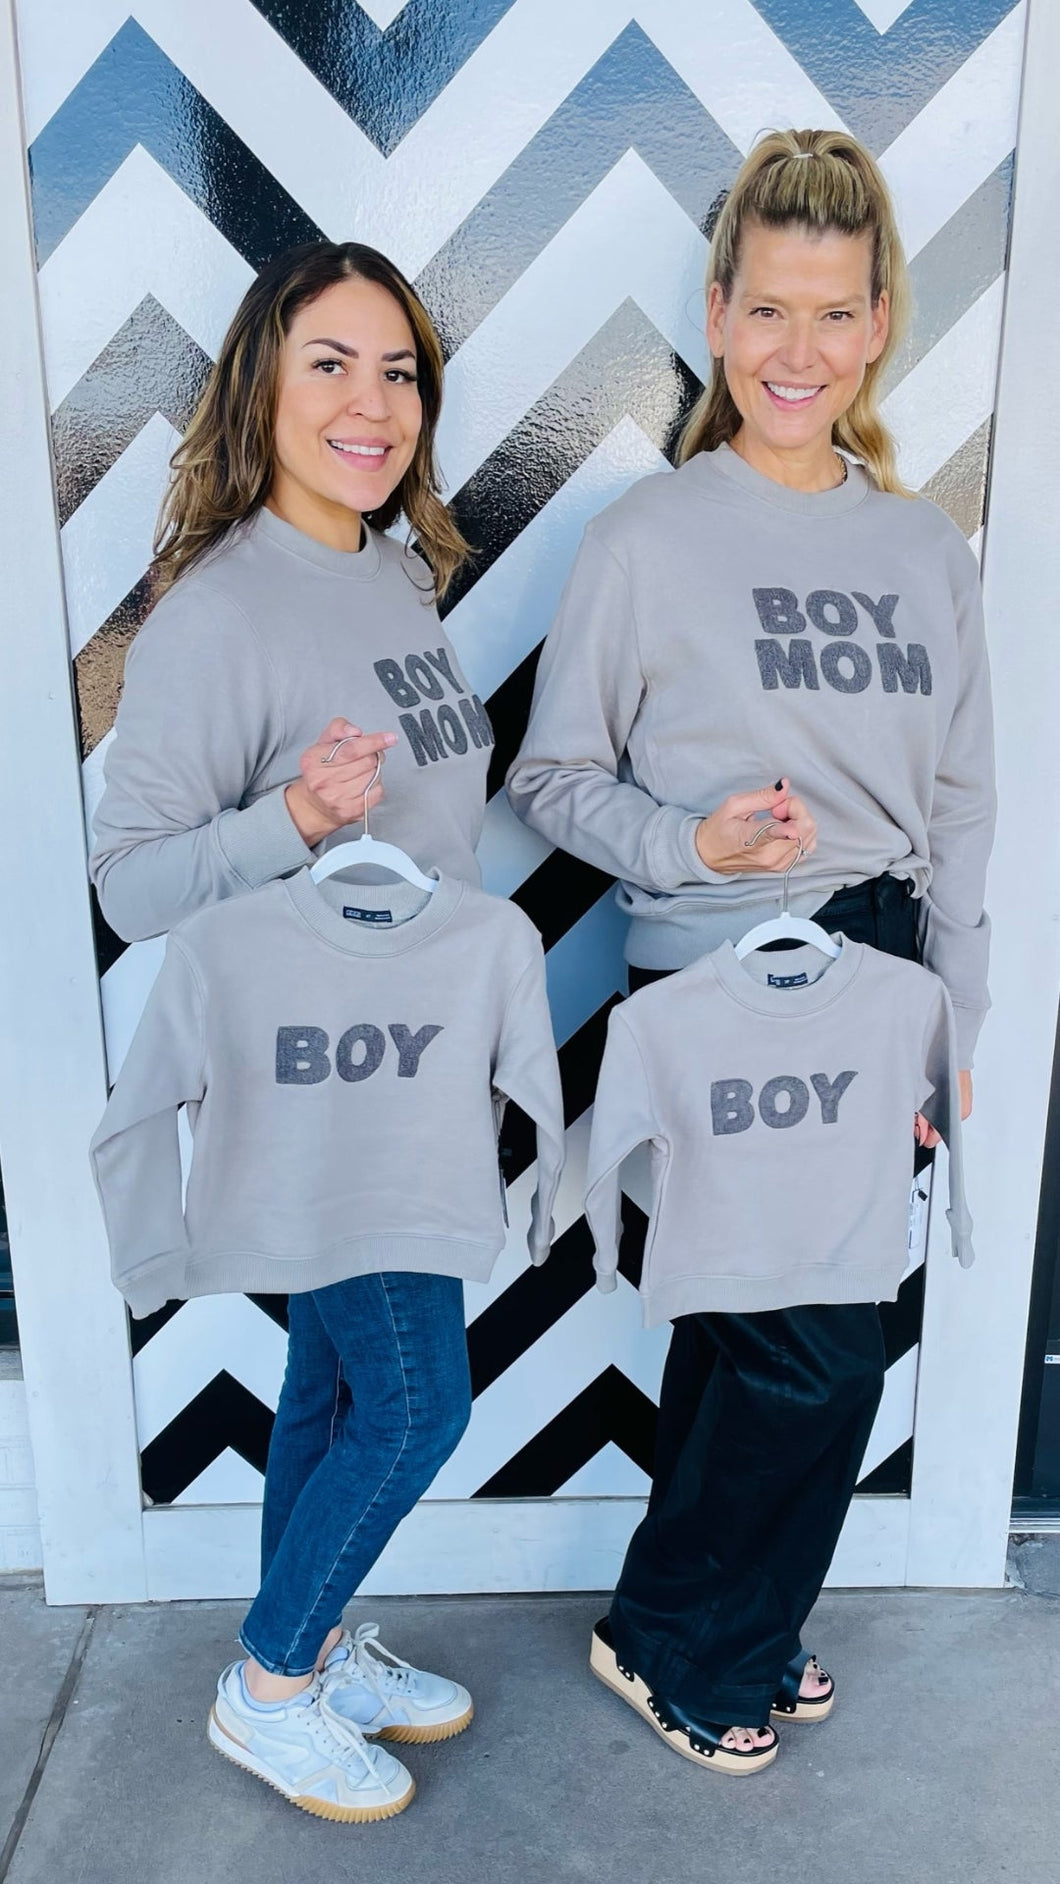 Boy Mom & Boy Matching Sweatshirts